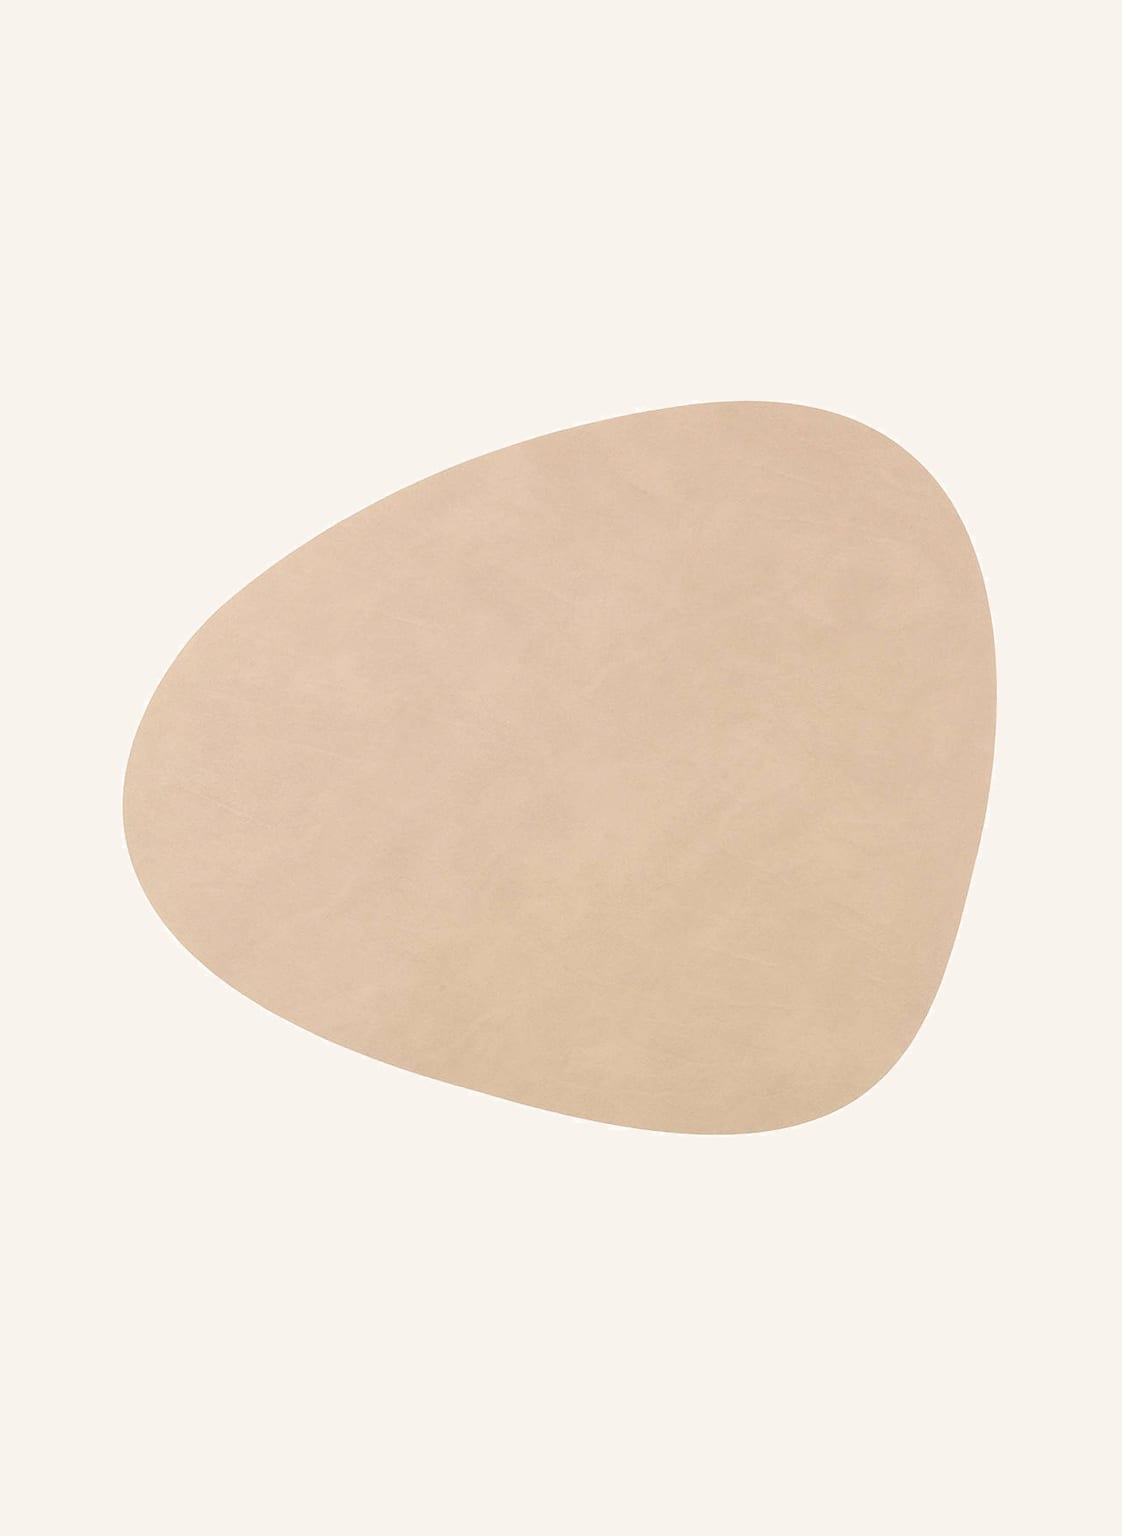 Image of Linddna Tischset Curve L Aus Leder beige